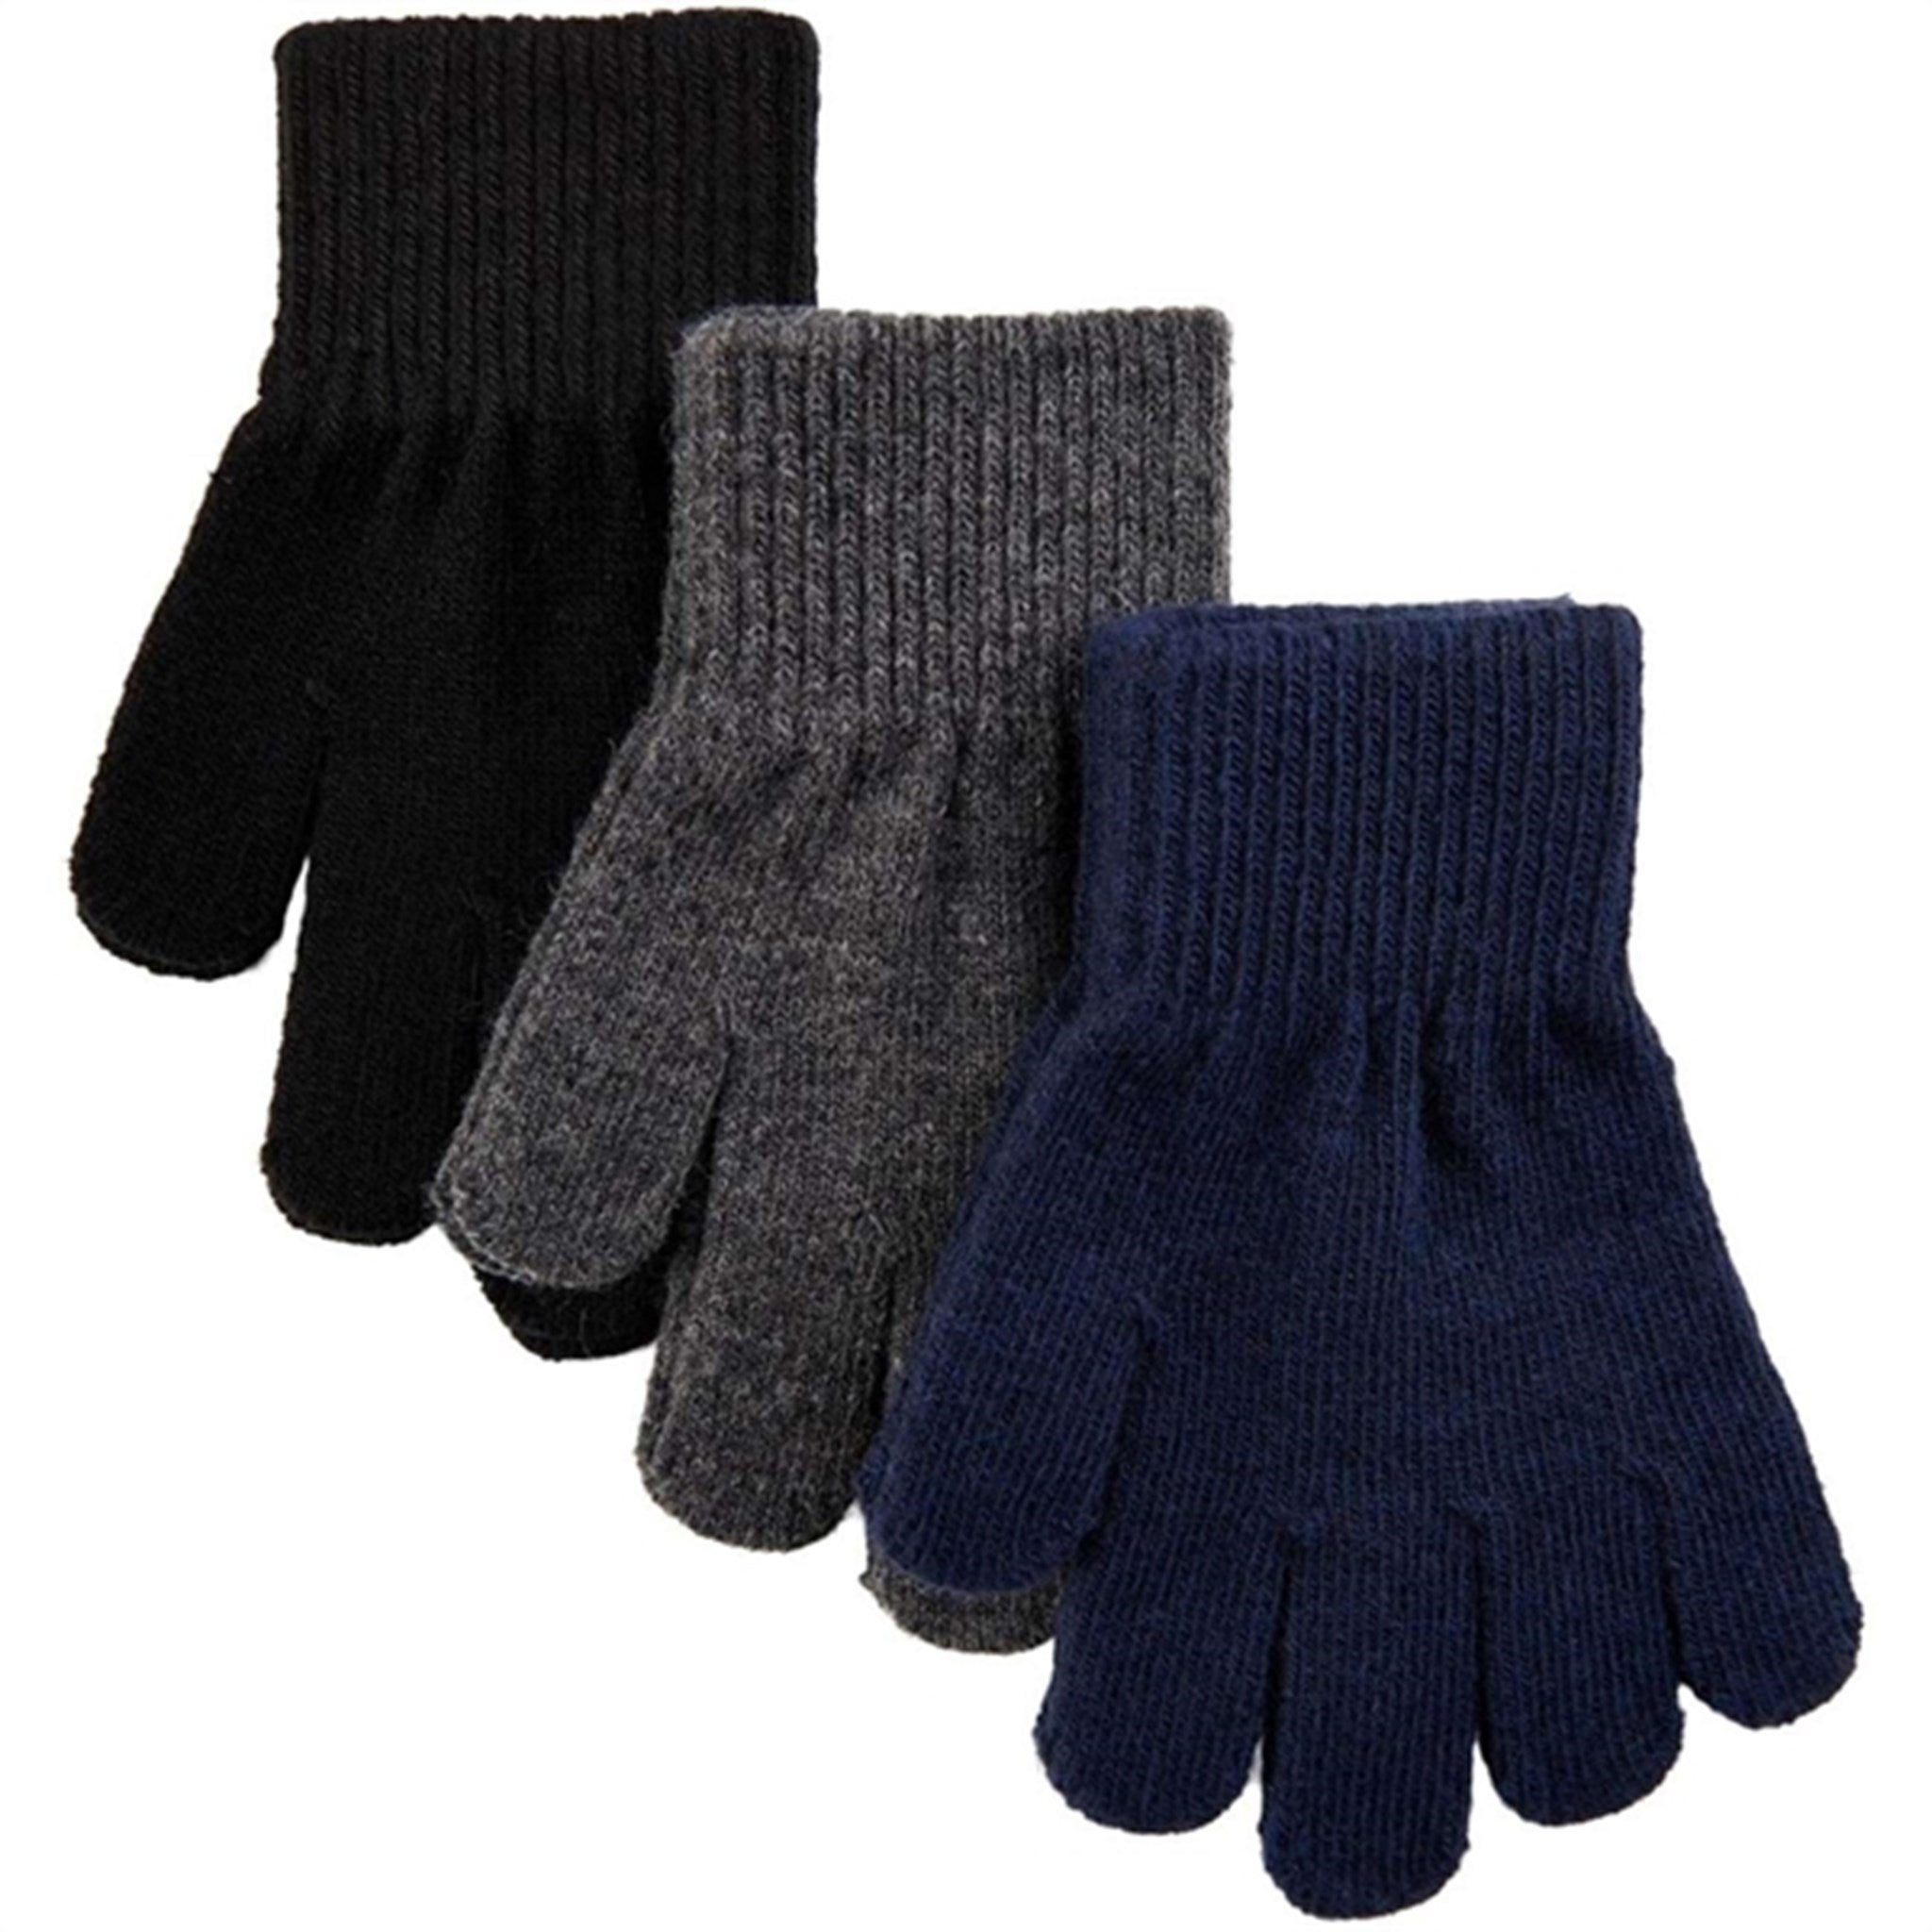 Mikk-Line Magic Gloves 3-Pack Bluenights Antrazite Black Pack